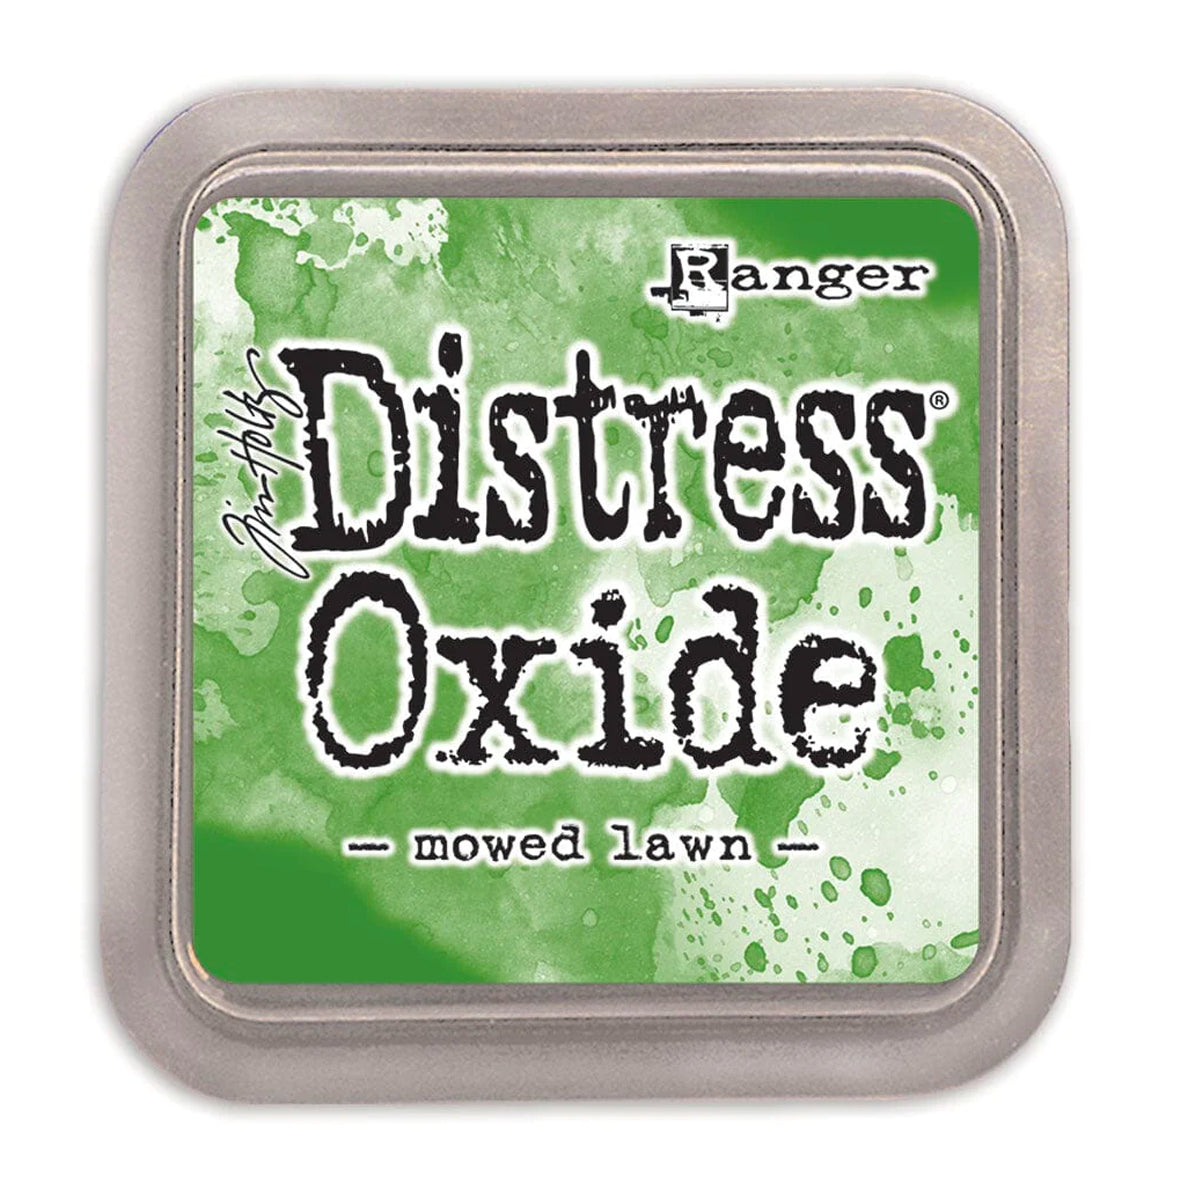 Tim Holtz Distress Oxide Ink Pad - Mowed Lawn